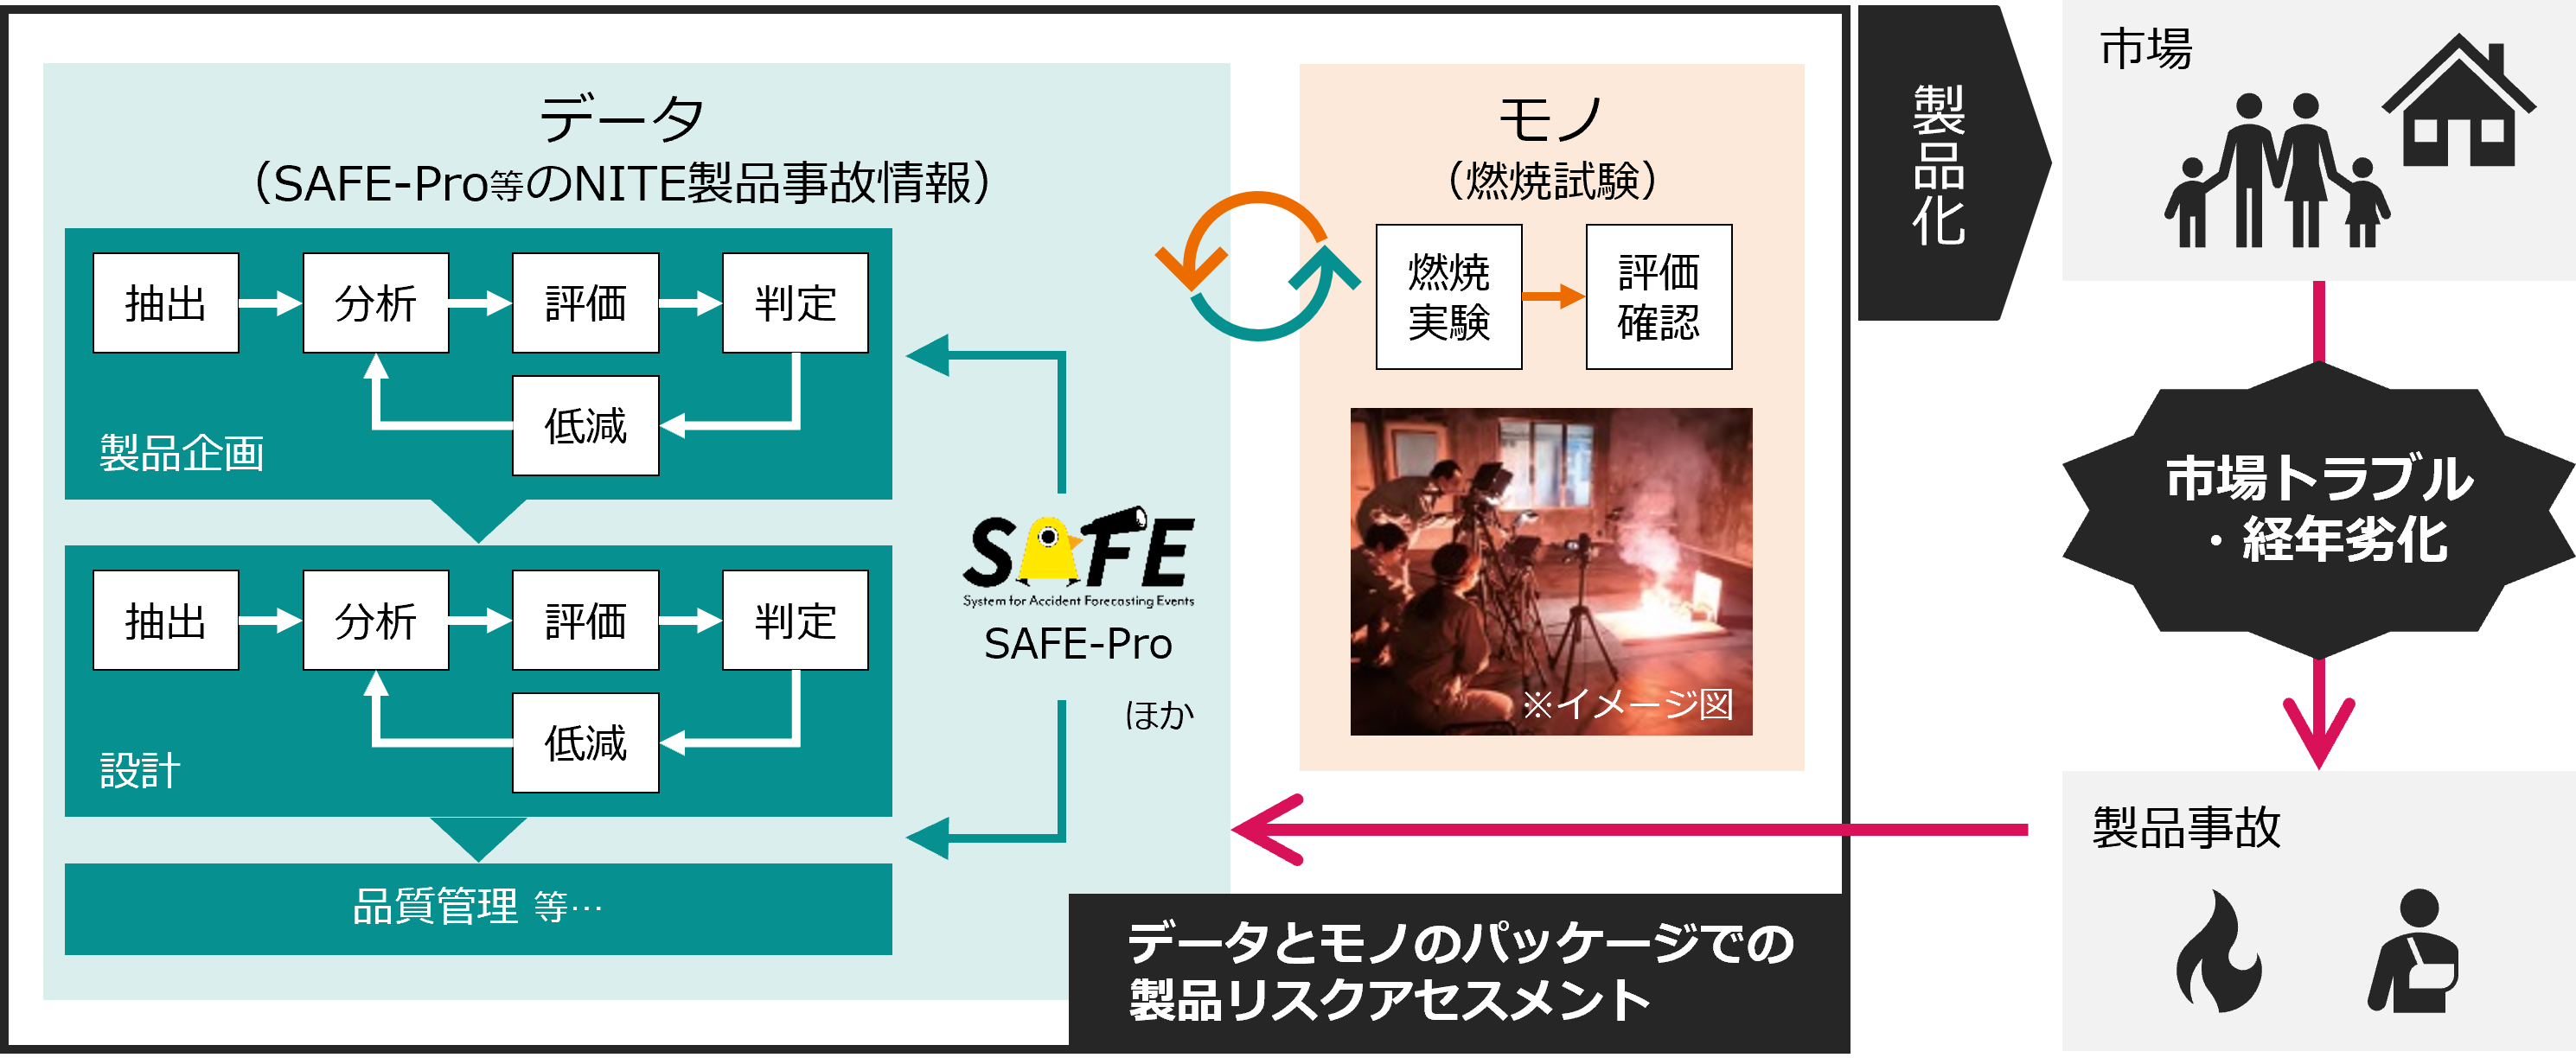 カシオ社の「データ（SAFE-Pro等）とモノ（燃焼試験）のパッケージでの製品リスクアセスメント」イメージ図